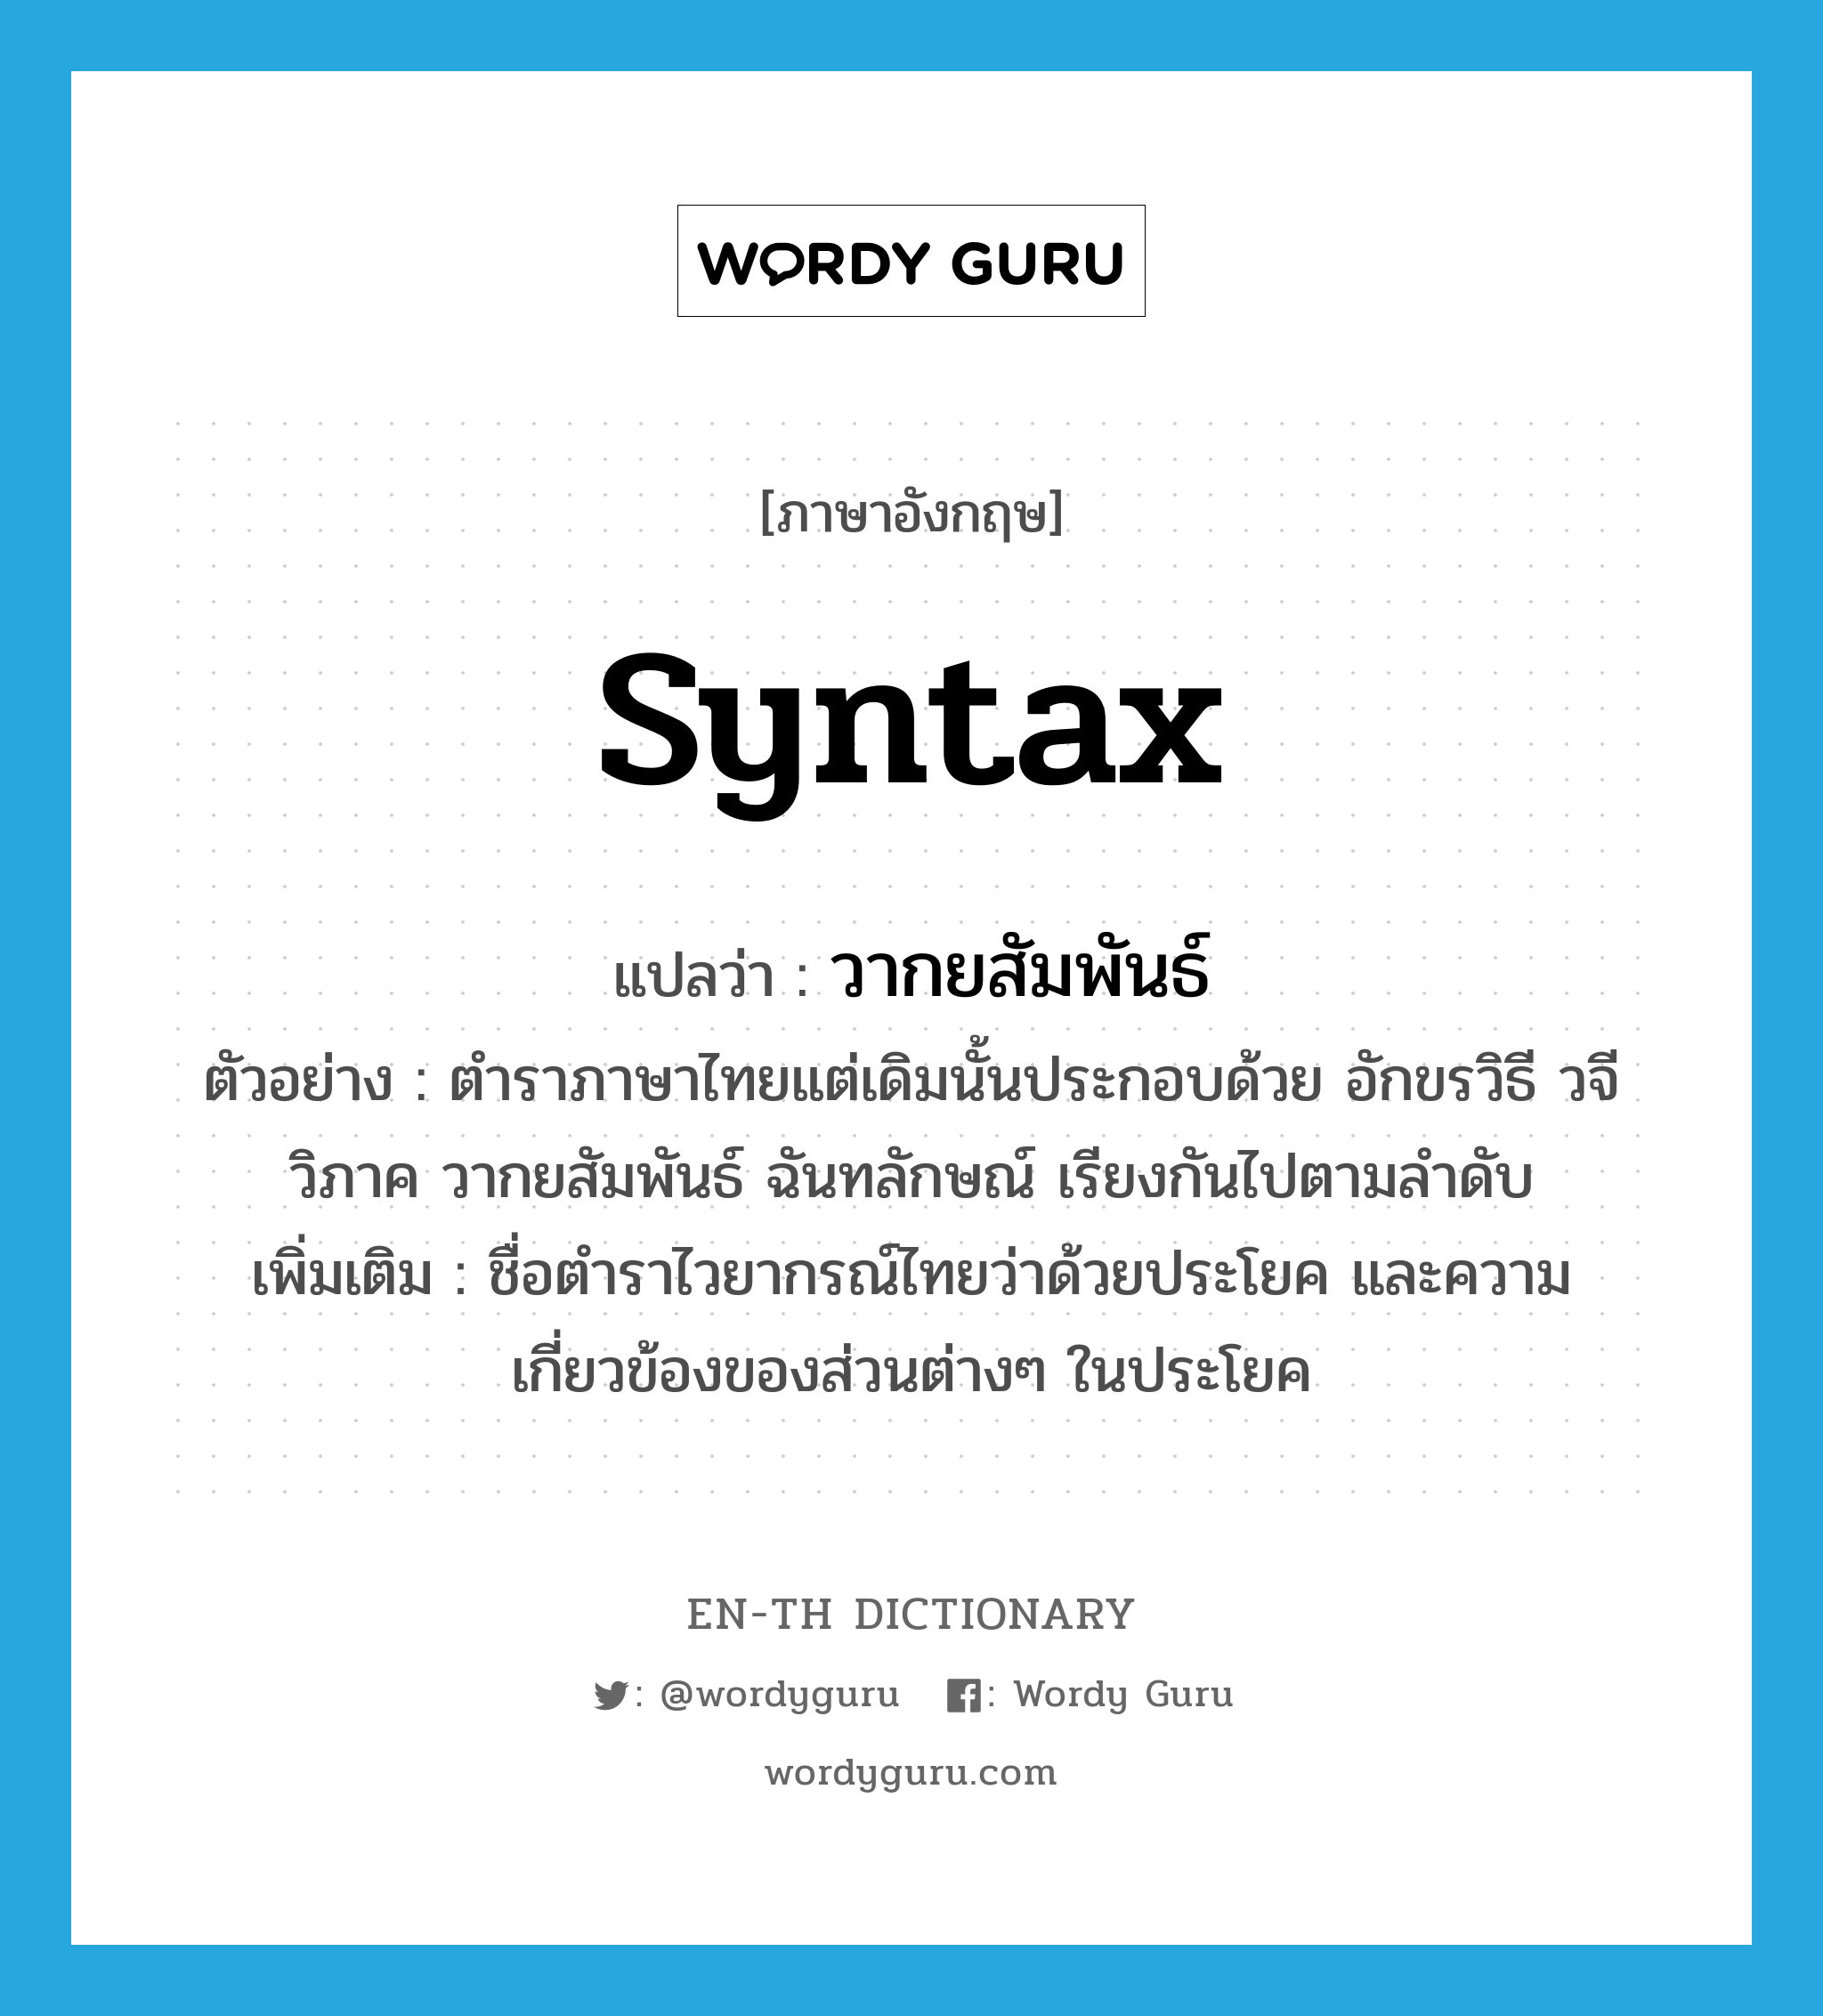 syntax แปลว่า?, คำศัพท์ภาษาอังกฤษ syntax แปลว่า วากยสัมพันธ์ ประเภท N ตัวอย่าง ตำราภาษาไทยแต่เดิมนั้นประกอบด้วย อักขรวิธี วจีวิภาค วากยสัมพันธ์ ฉันทลักษณ์ เรียงกันไปตามลำดับ เพิ่มเติม ชื่อตำราไวยากรณ์ไทยว่าด้วยประโยค และความเกี่ยวข้องของส่วนต่างๆ ในประโยค หมวด N